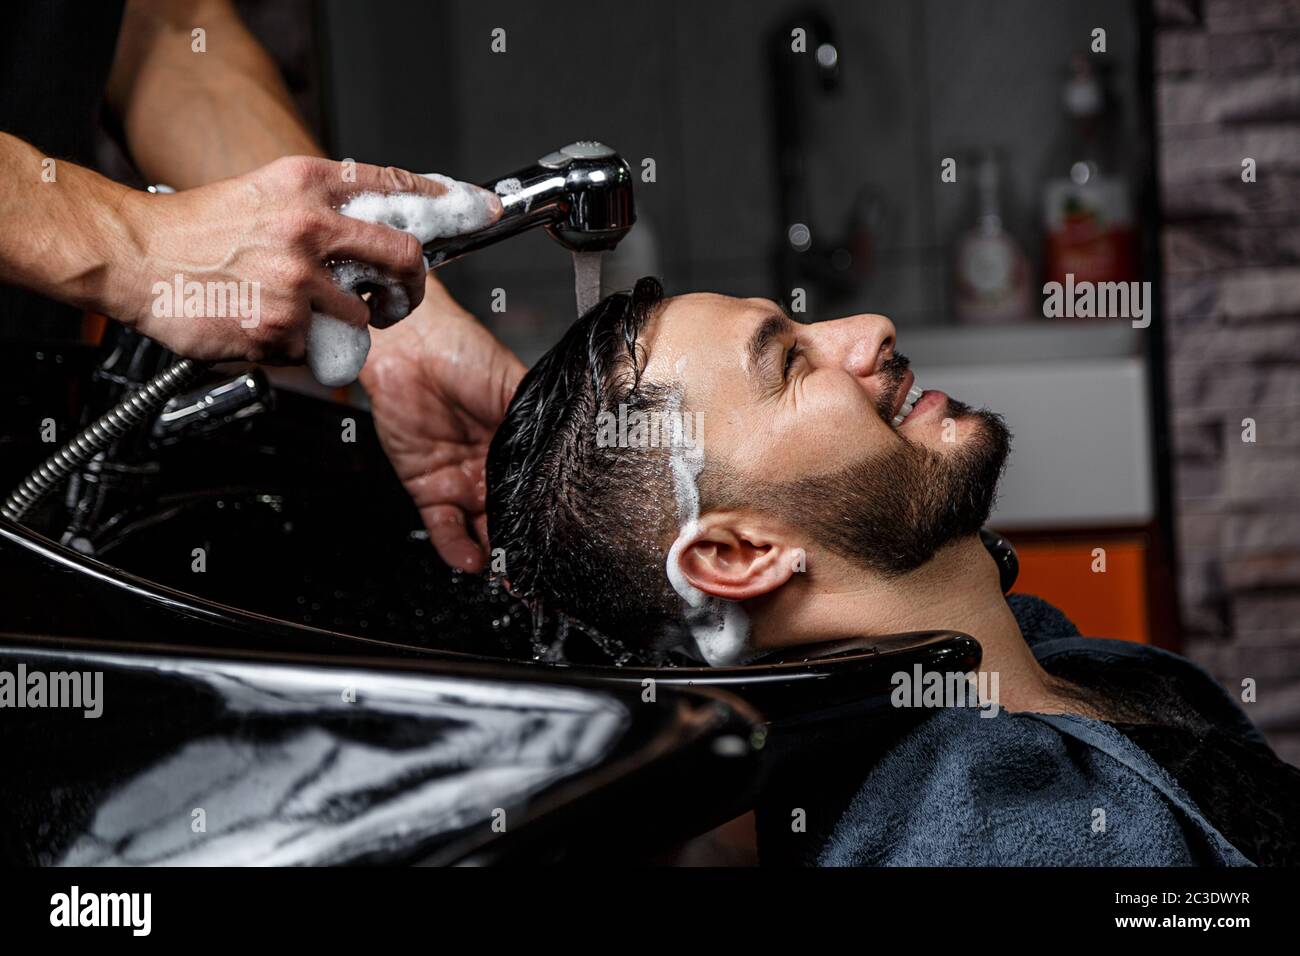 Ein junger dunkelhaariger Kerl mit indischem oder asiatischem Auftritt in einem Barber-Shop auf einem schwarzen Stuhl. Der Barber wäscht seinen Kopf mit Shampoo Stockfoto